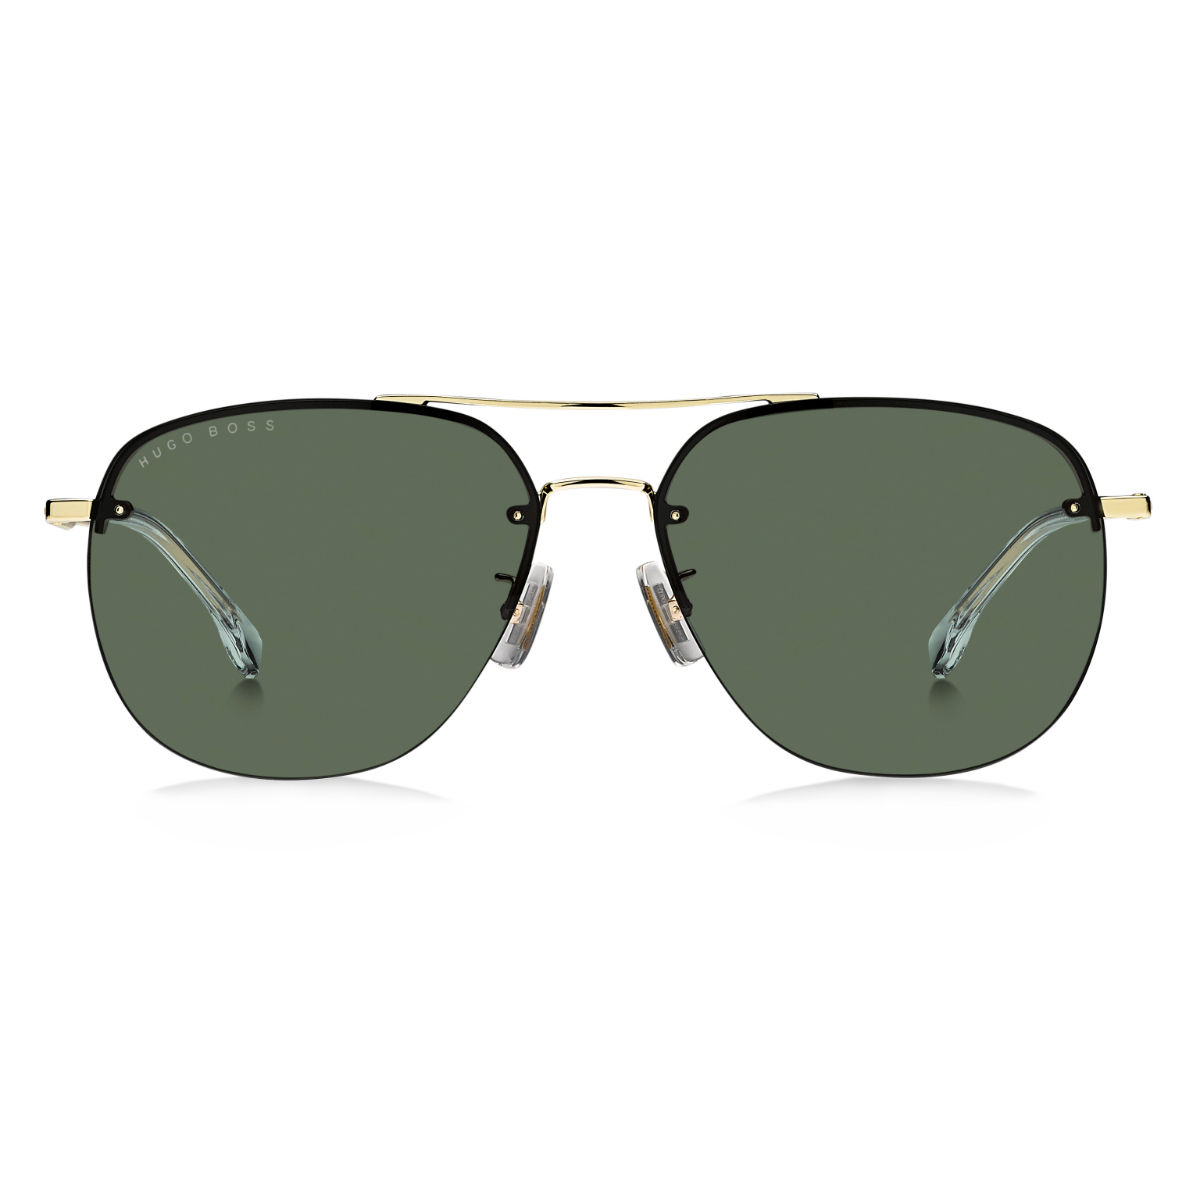 Classic Best Selling Aviators Sunglasses For Men Black Frame Green Len –  Glasses India Online